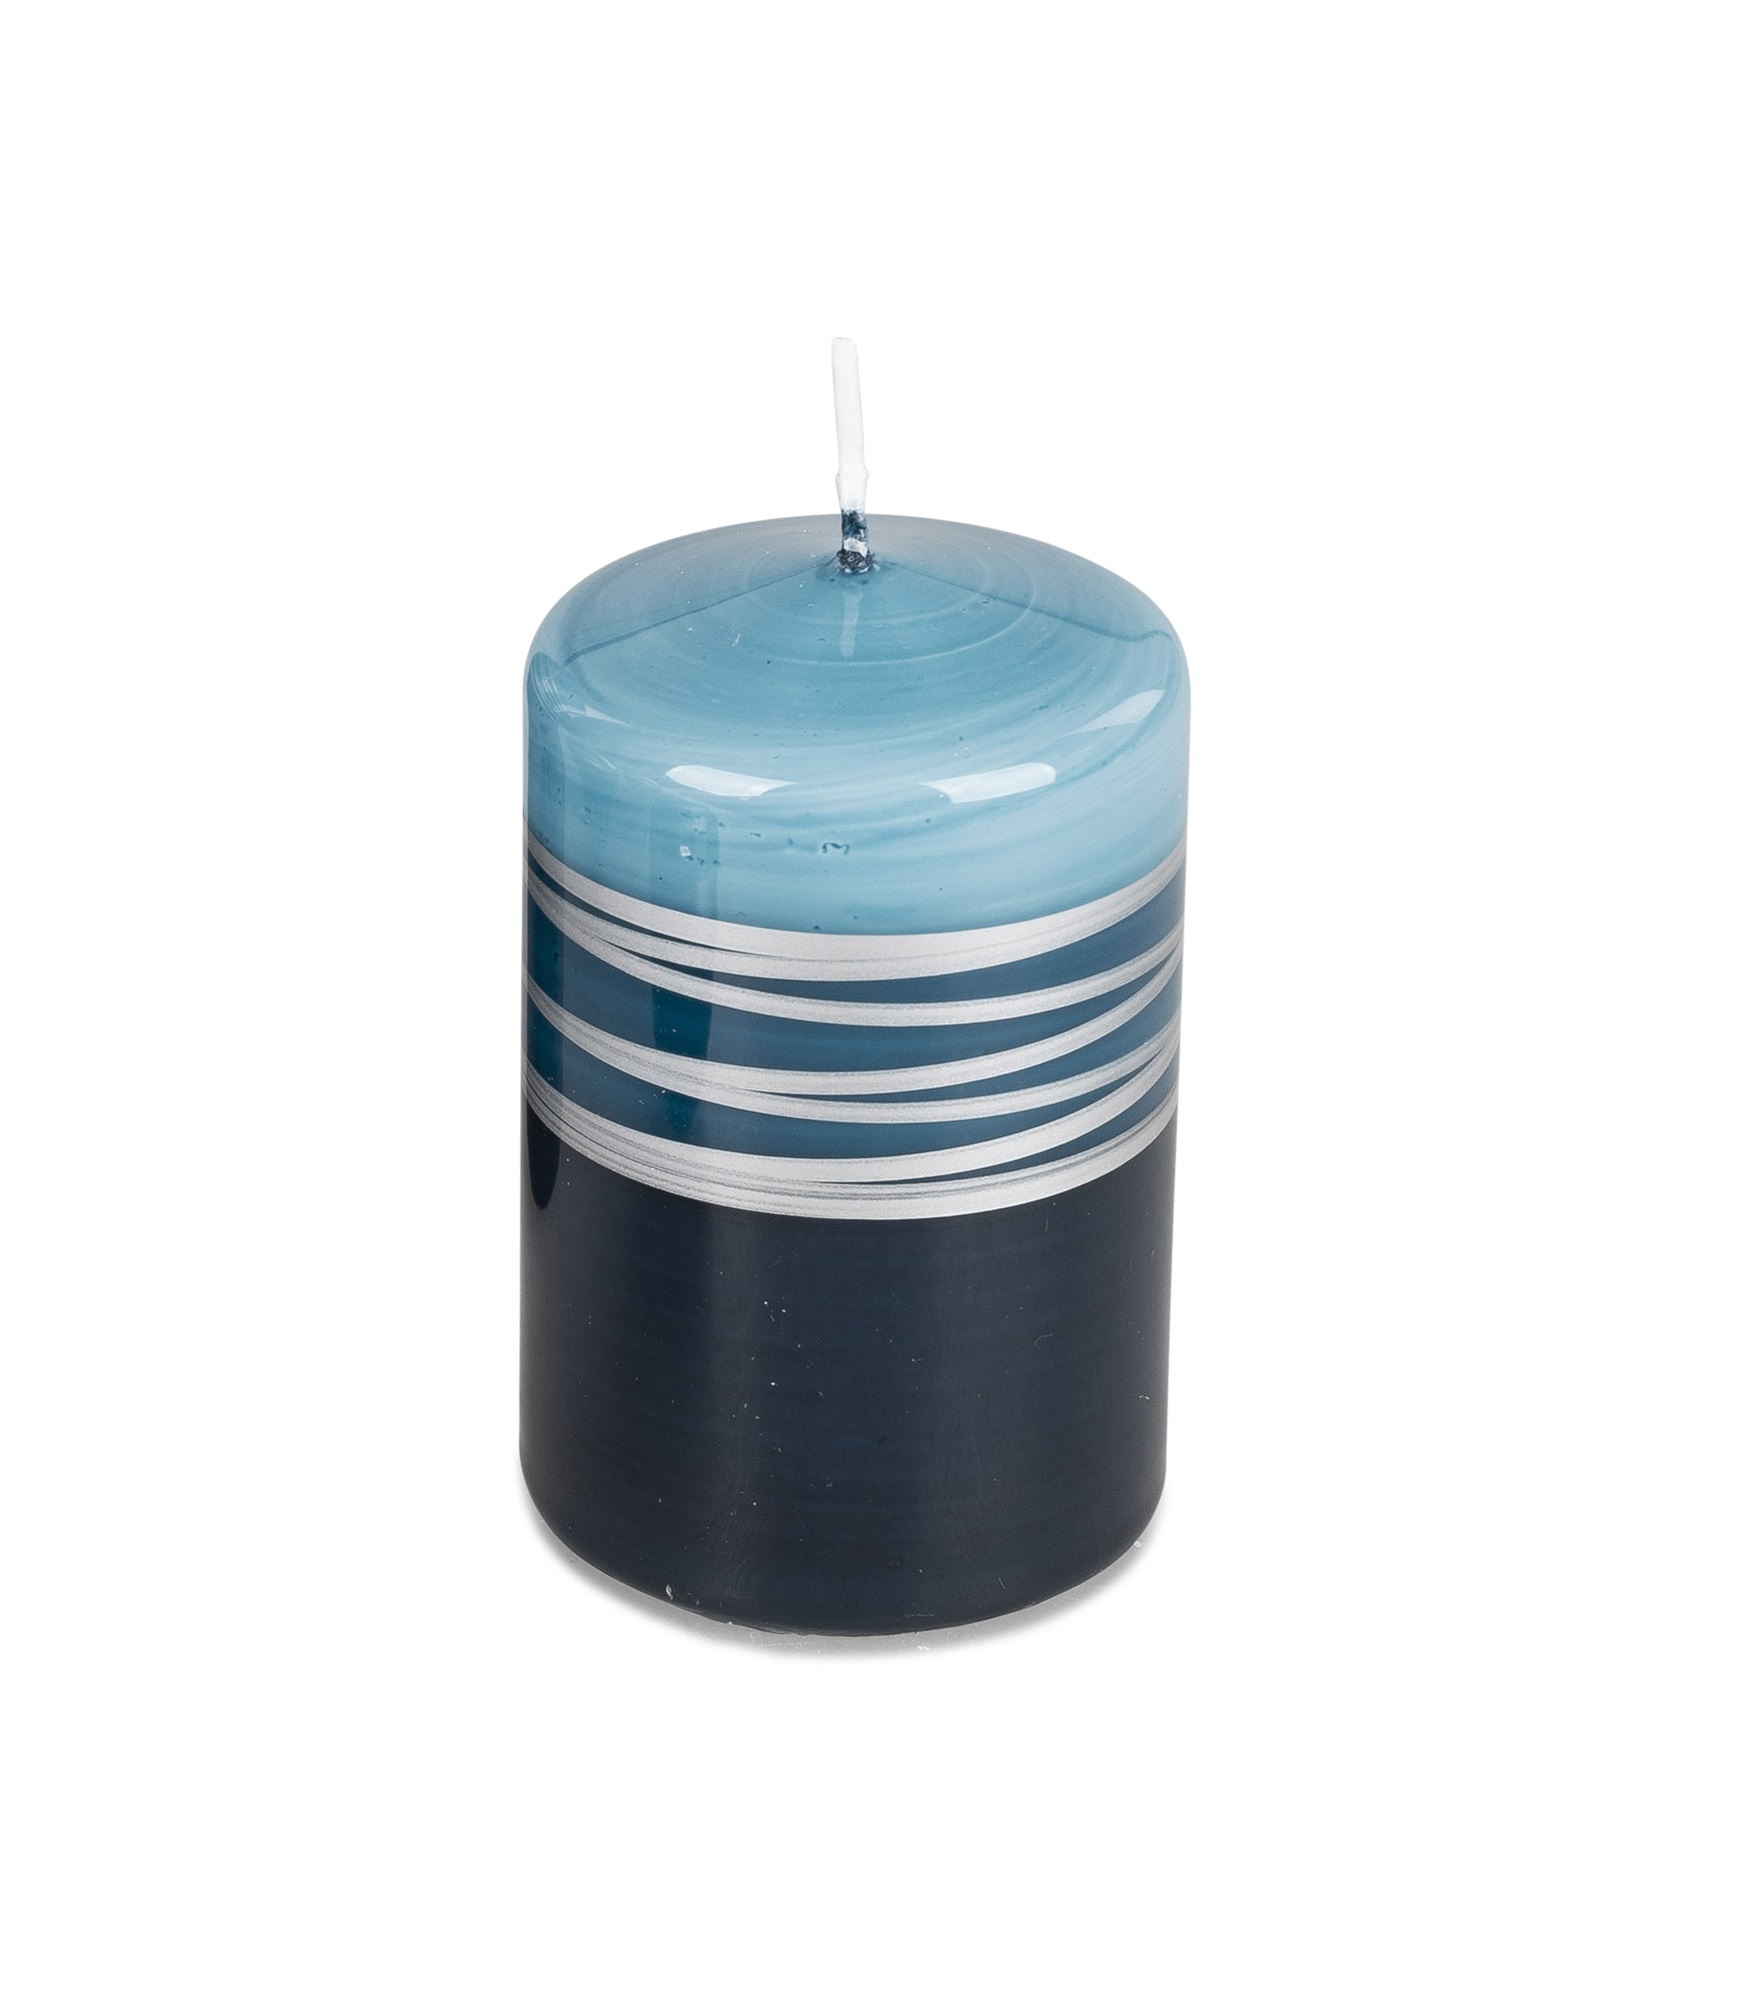 Stumpen Kerze 11 cm hoch - Ø 7 cm Spirale petrol-silber mit glänzend lackierter Oberfläche Wachs aus Deutschland.